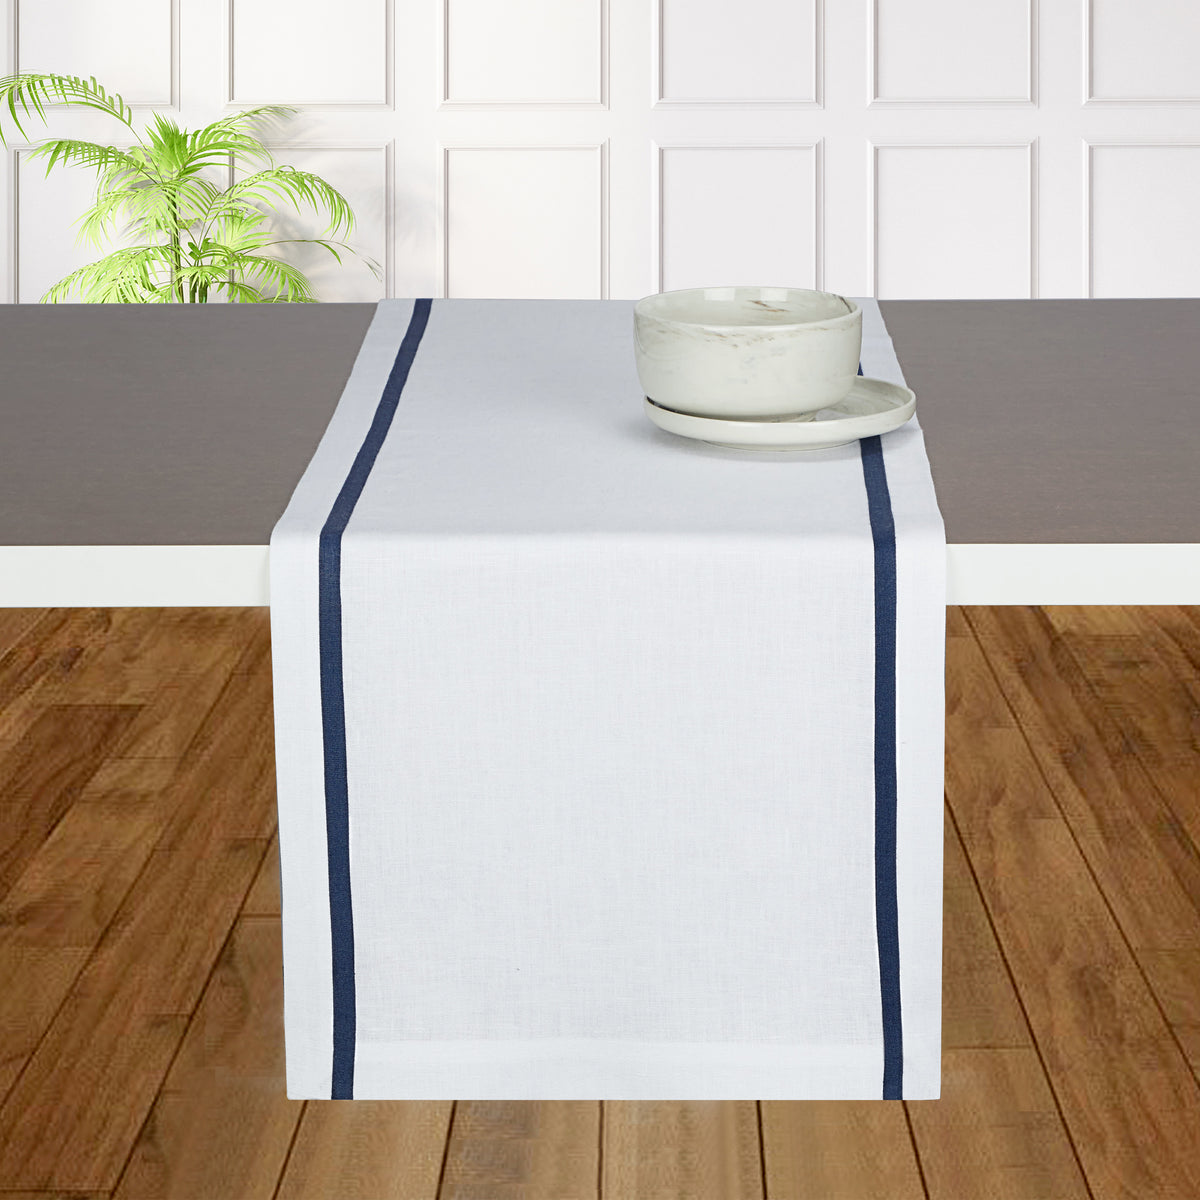 White and Navy Blue Linen Table Runner - Stripe